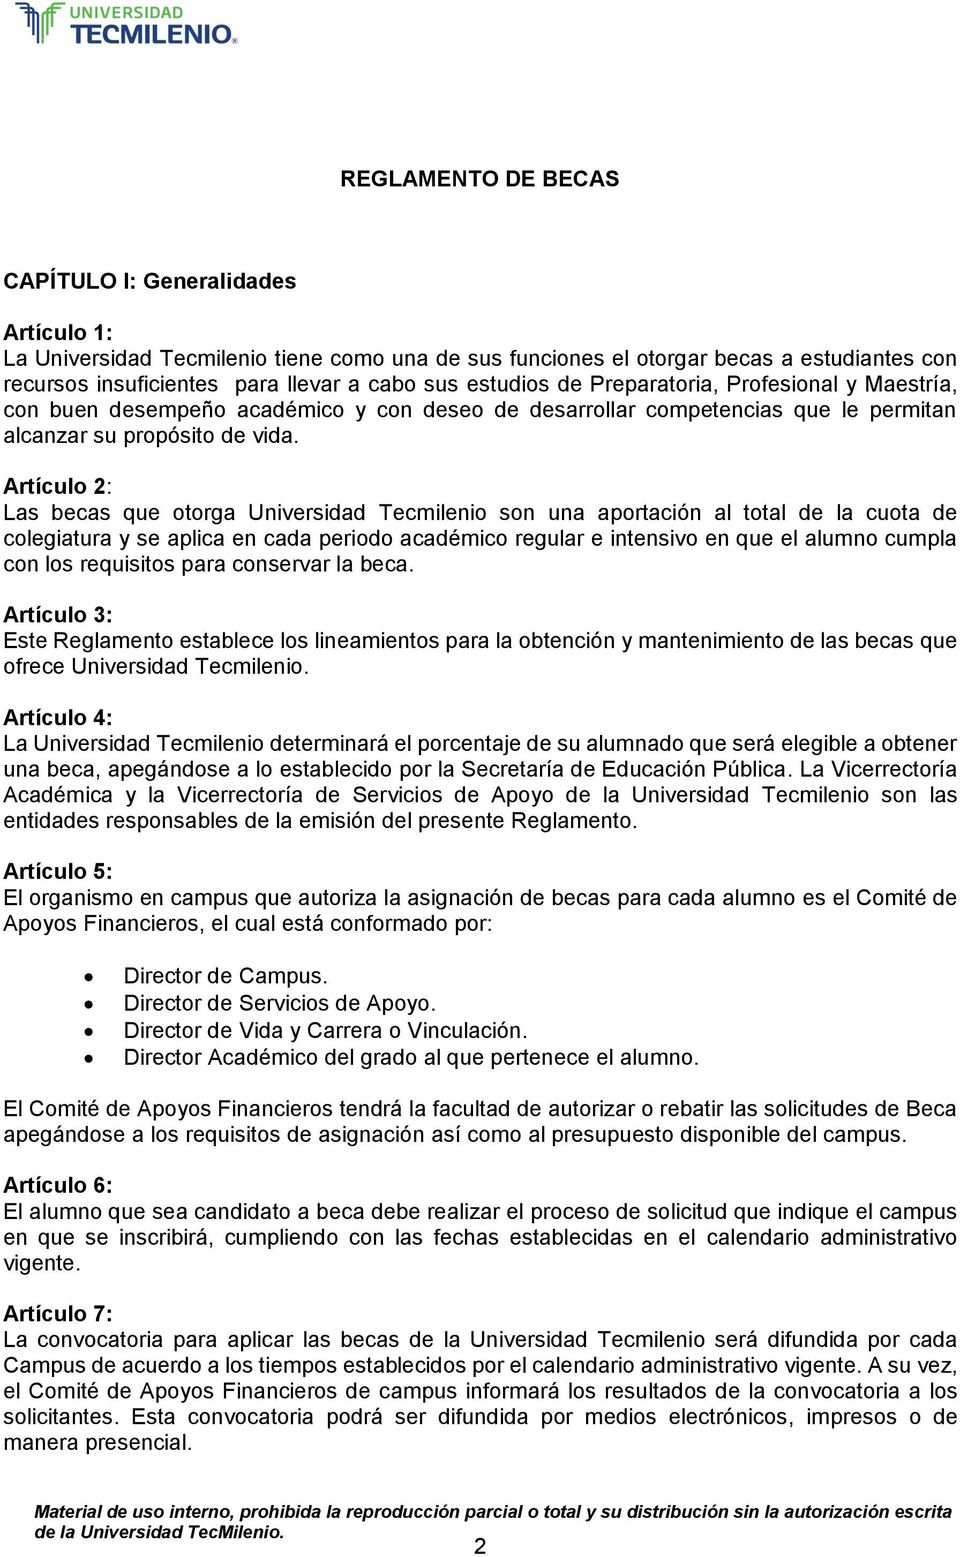 Artículo 2: Las becas que otorga Universidad Tecmilenio son una aportación al total de la cuota de colegiatura y se aplica en cada periodo académico regular e intensivo en que el alumno cumpla con